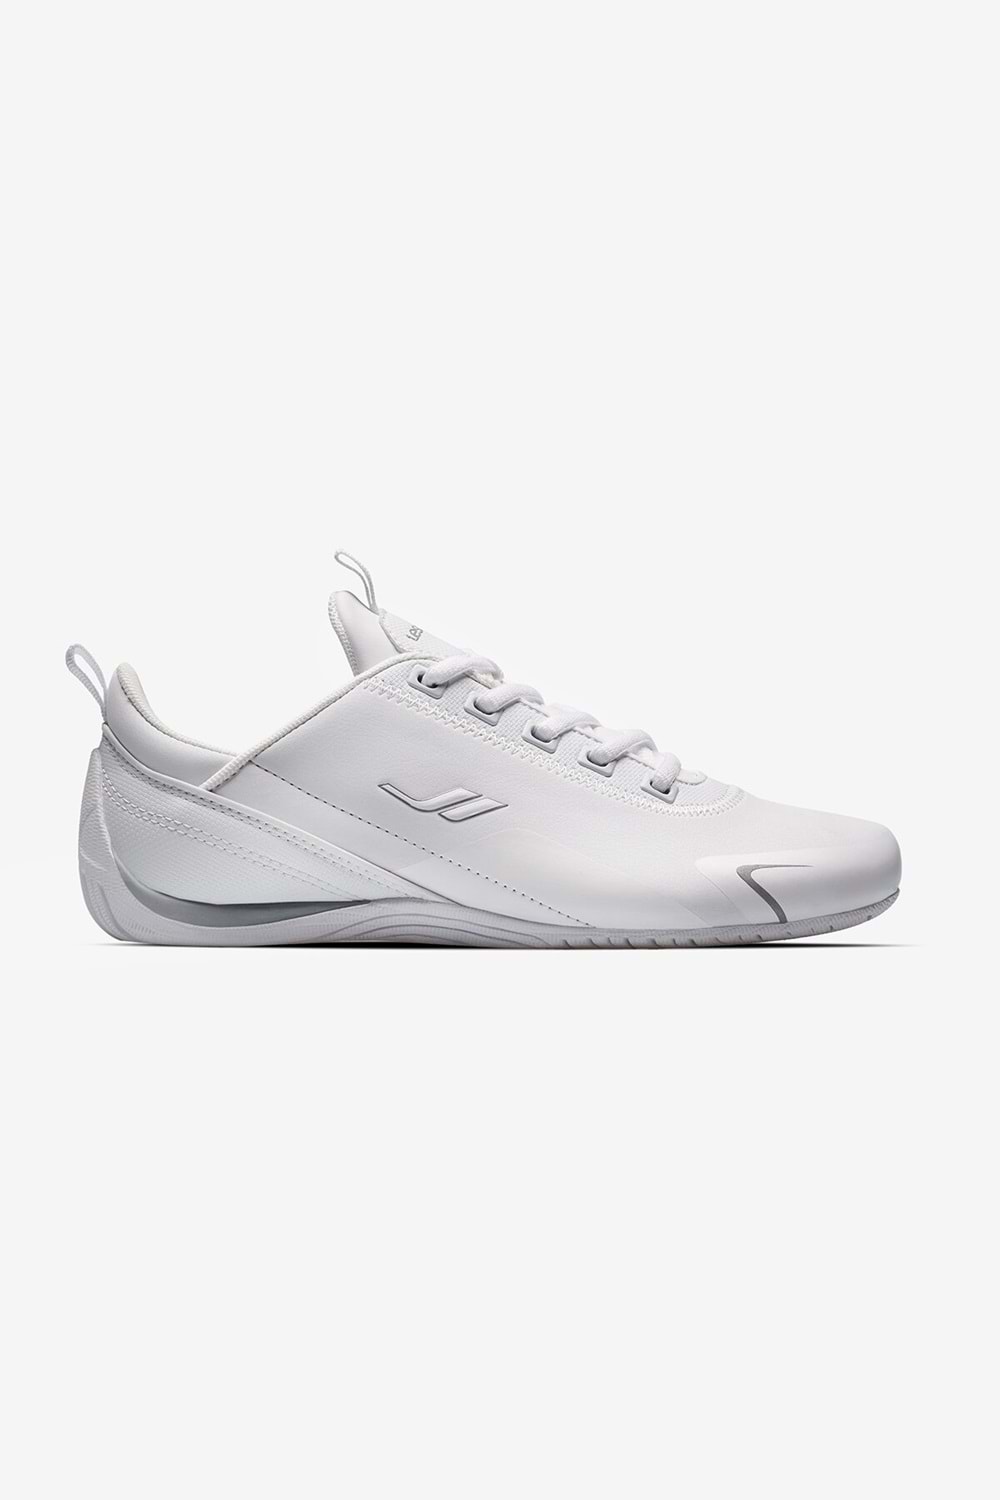 Lescon Smash 2 Erkek Sneaker Ayakkabı - Beyaz - 44